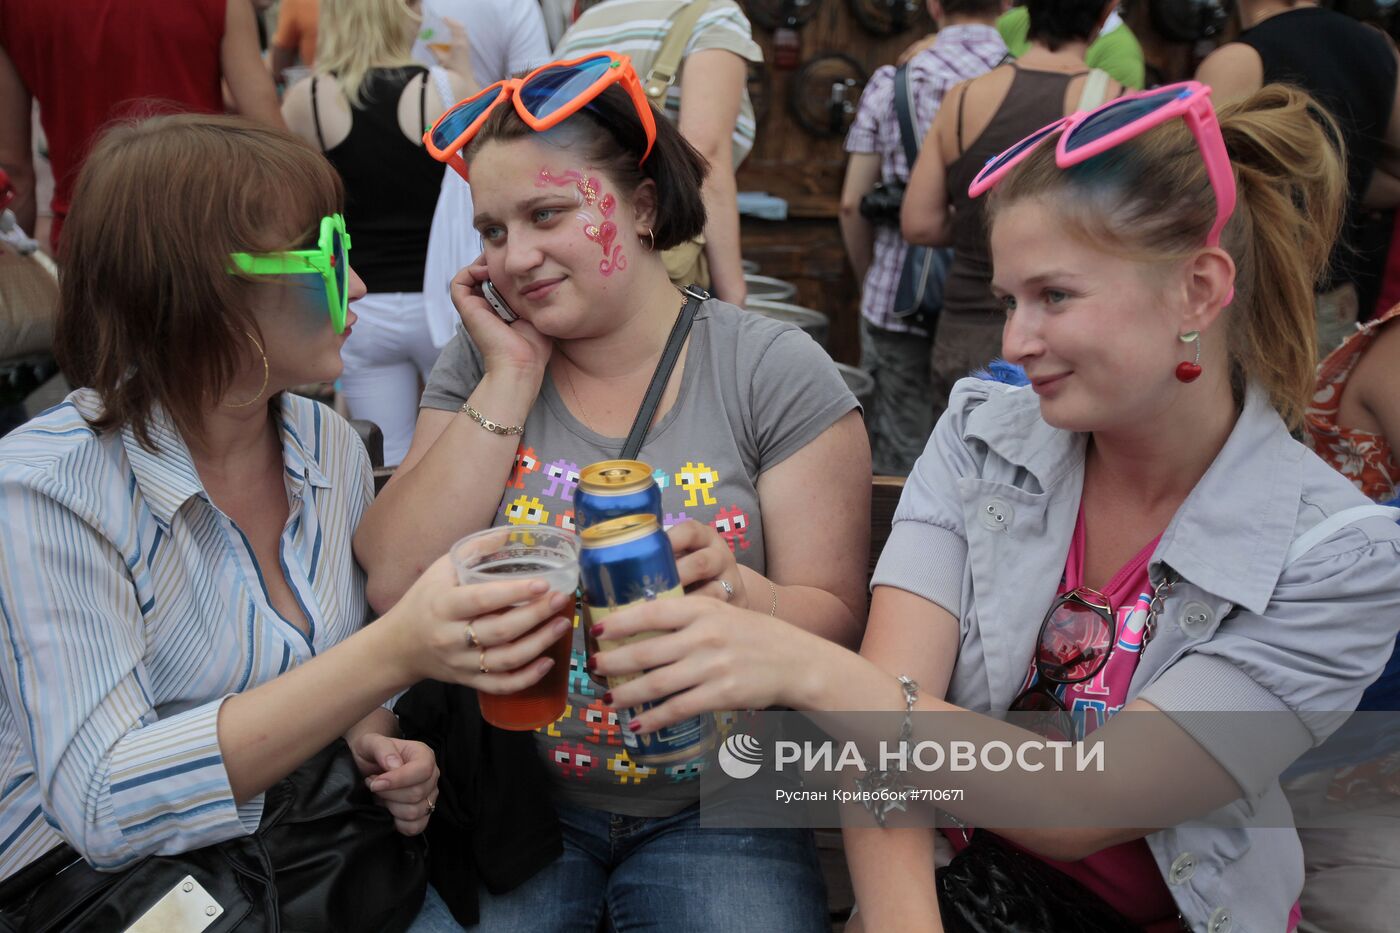 ХII Московский международный фестиваль пива